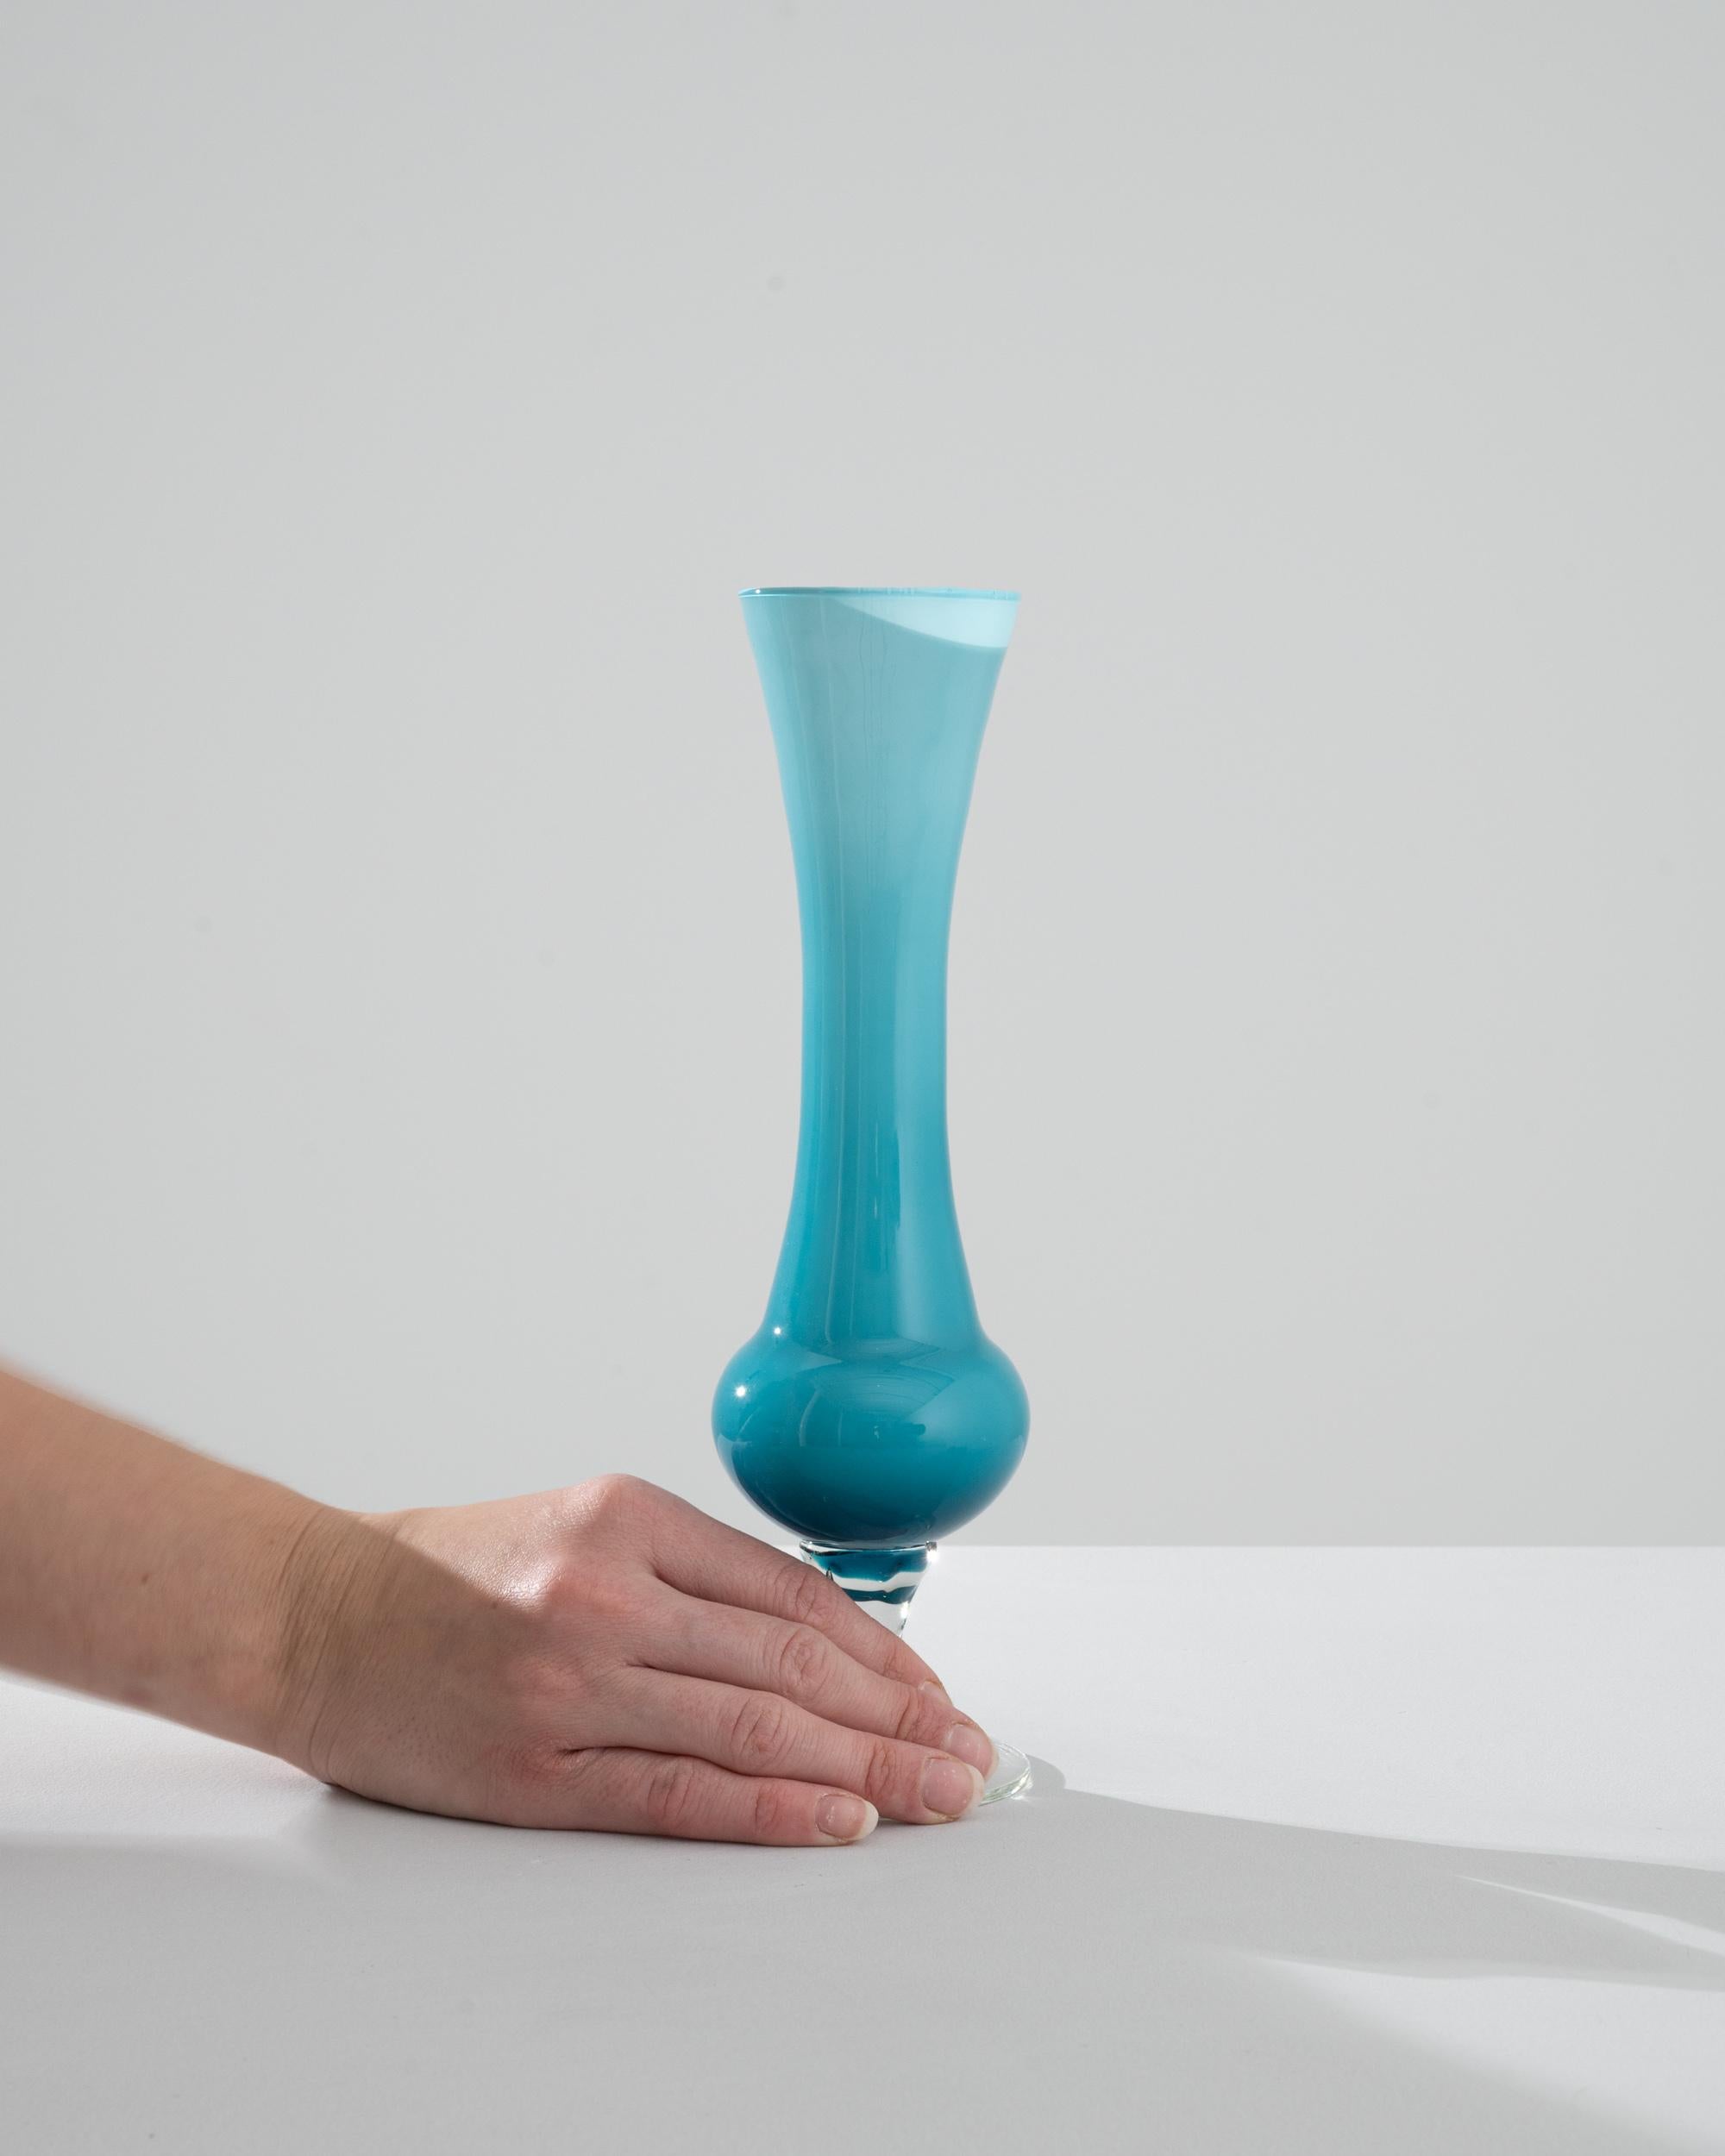 Découvrez l'enchantement du design italien avec ce captivant vase en verre bleu italien des années 1960, qui témoigne de la passion de l'époque pour les formes audacieuses et fluides et les couleurs vibrantes. La séduisante palette de couleurs bleu